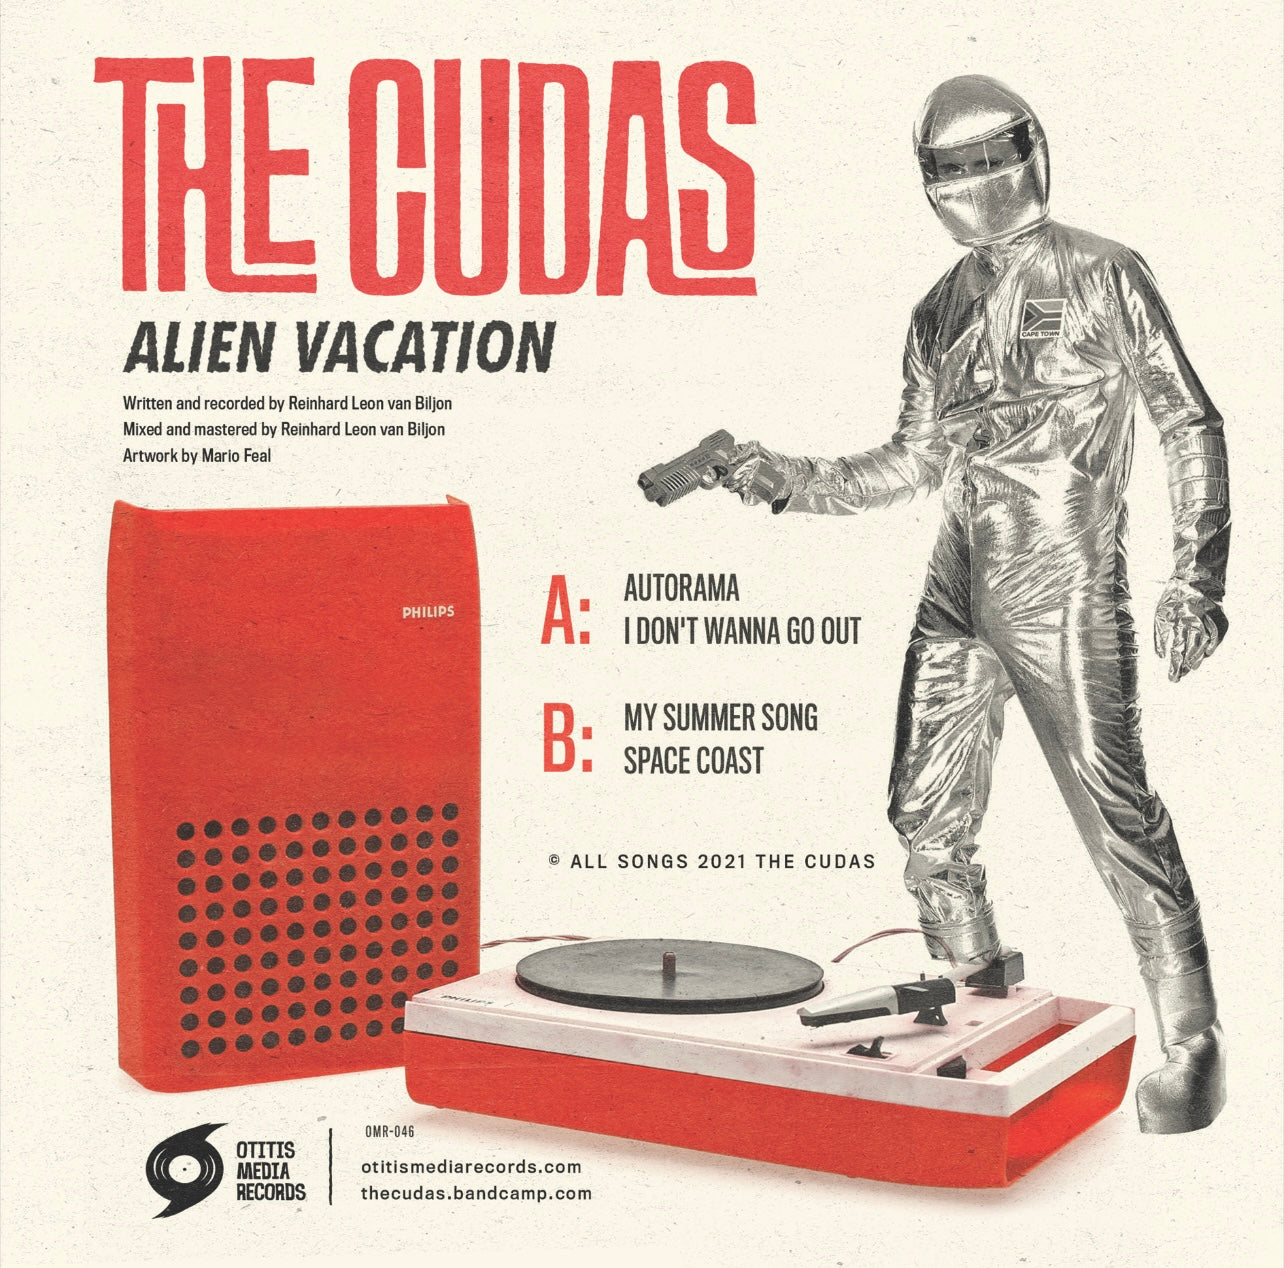 OMR-046 THE CUDAS “ Alien Vacation” 7 inch EP